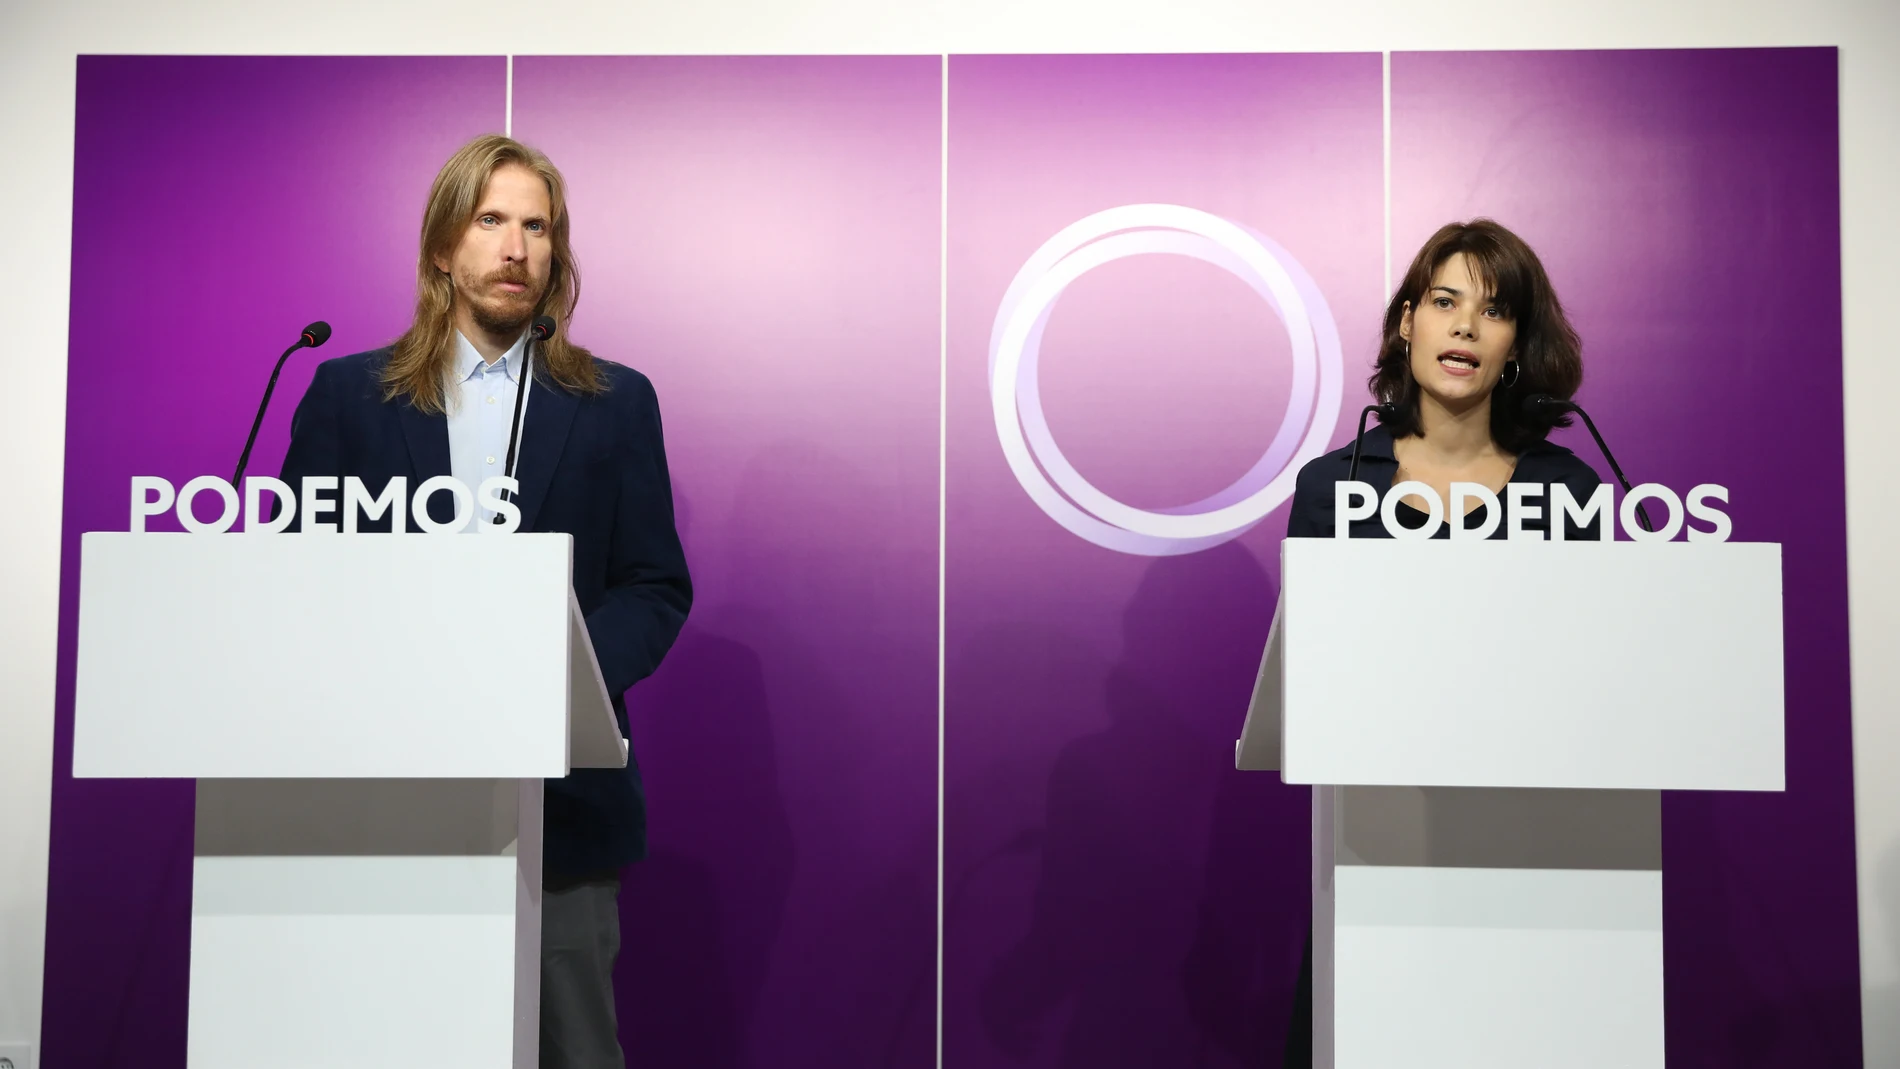 Los portavoces de Podemos Isa Serra y Pablo Fernández intervienen en una rueda de prensa en la sede de Podemos